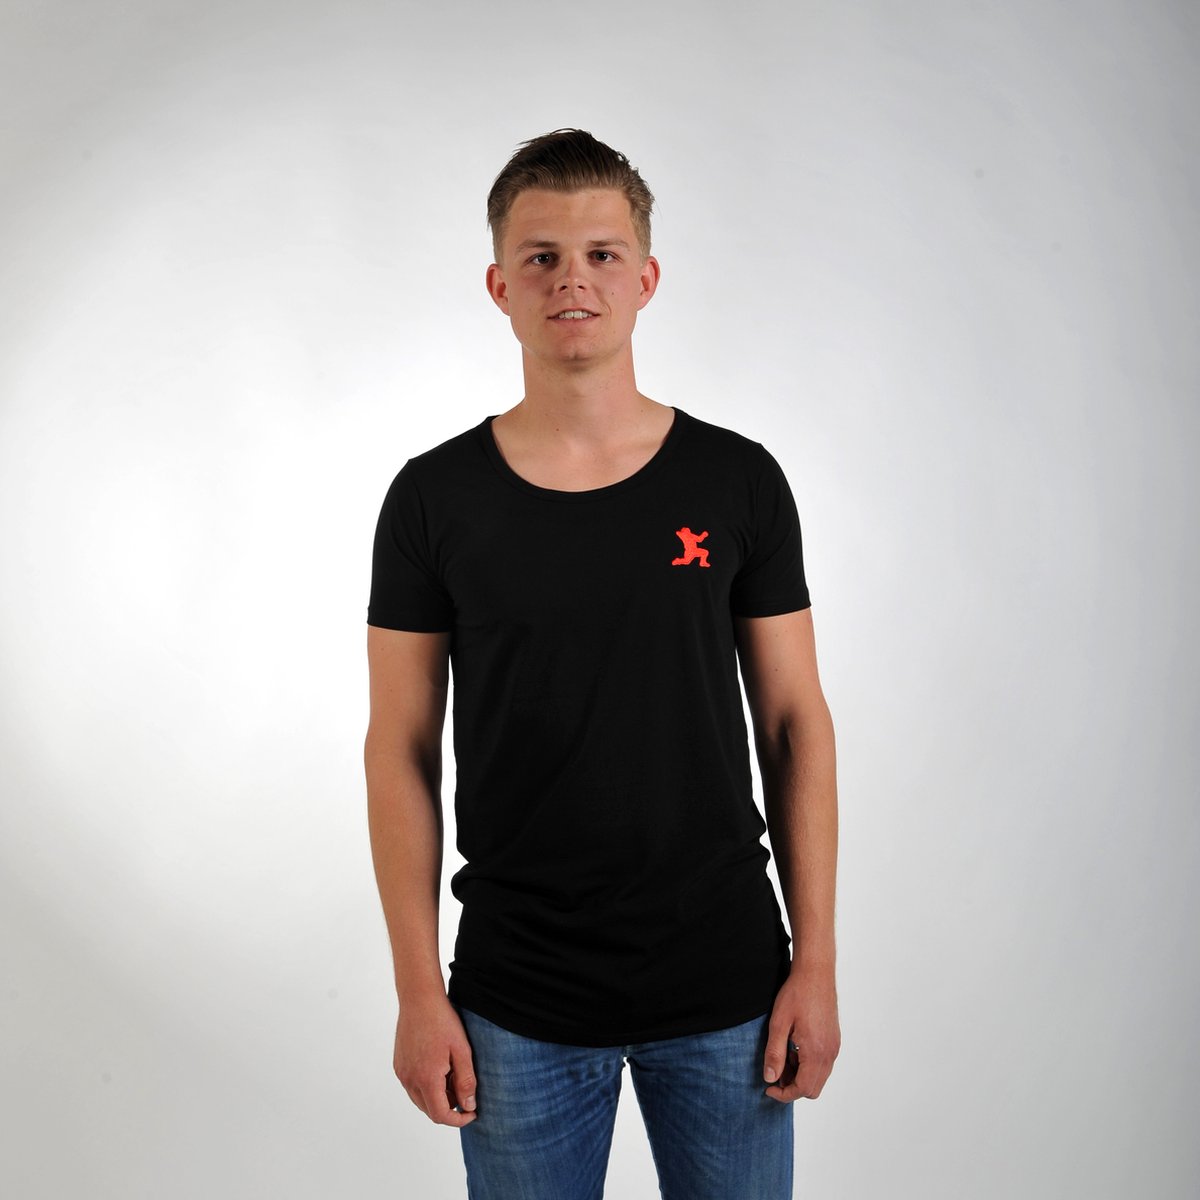 Imperatore - Andy van der Meijde t-shirt - zwart - rood logo - Maat L